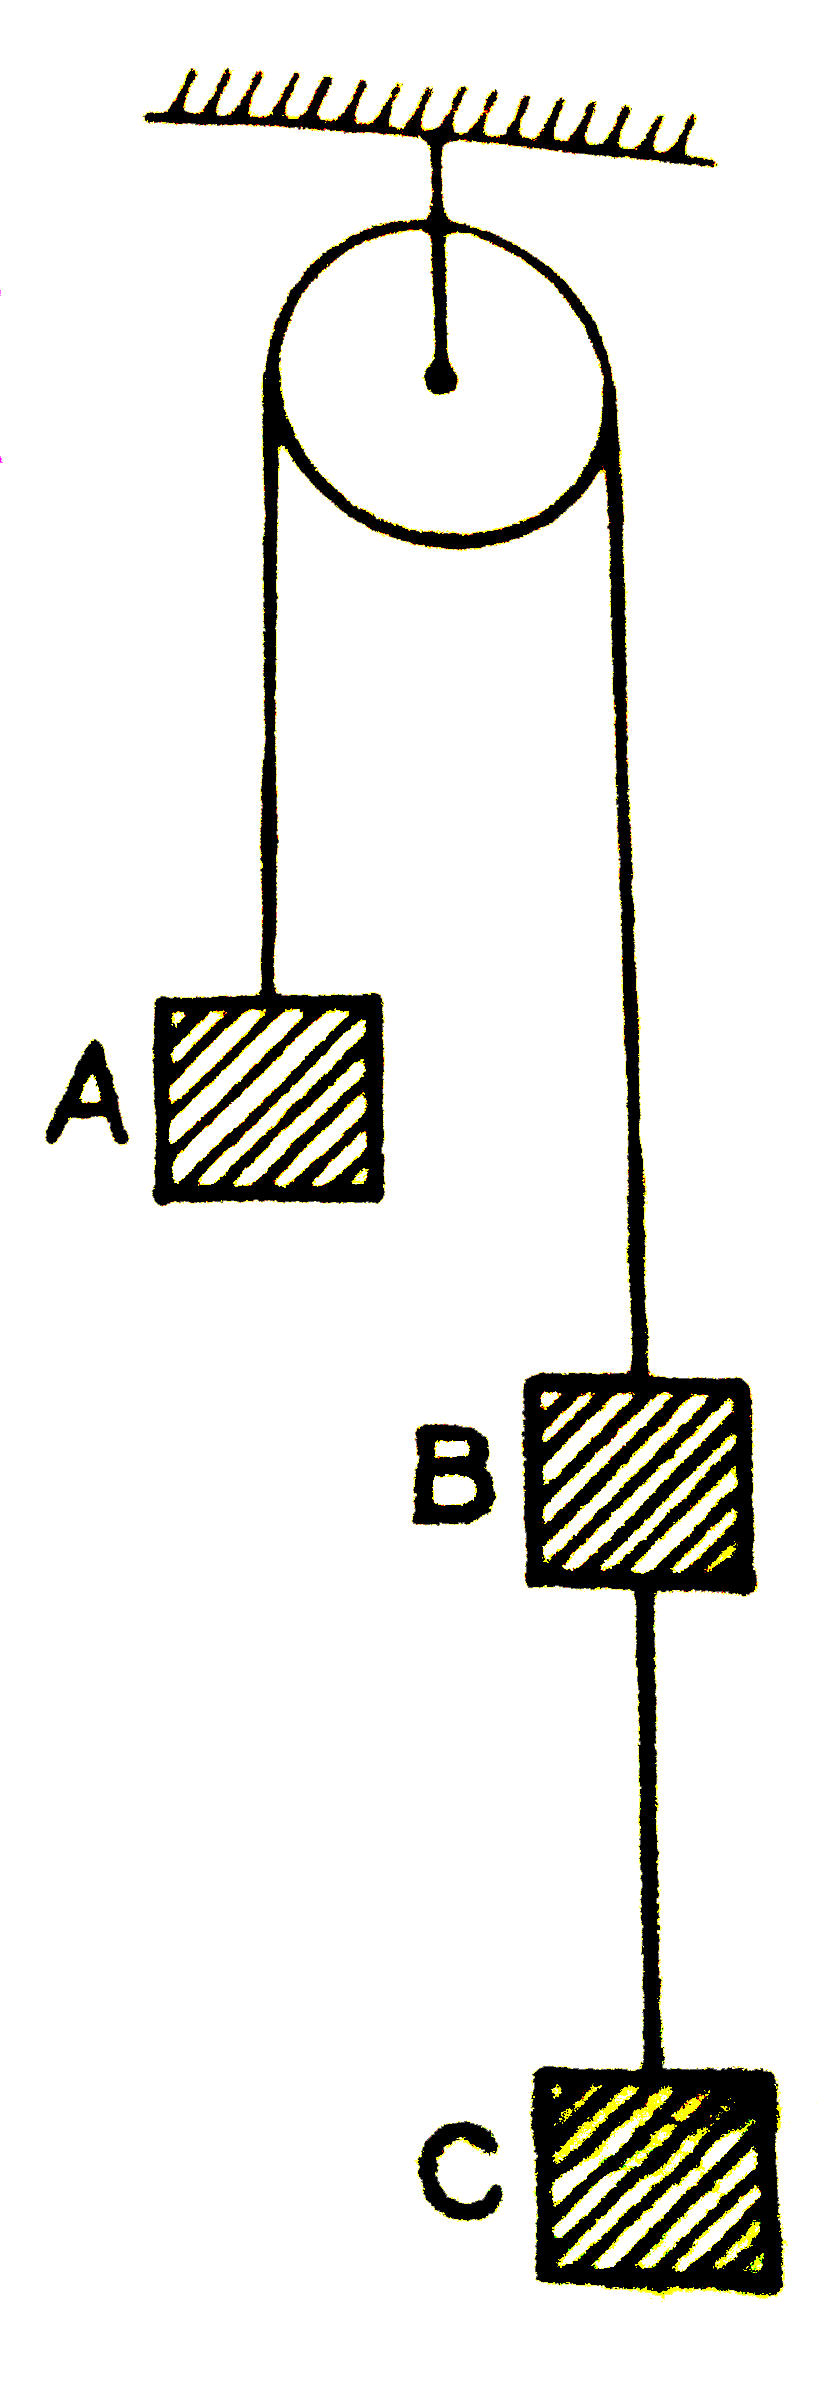 तीन भार (प्रत्येक का द्रव्यमान 2 किग्रा ) A, B व C एक डोरी से चित्रानुसार लटके है। डोरी घर्षणहीन घिरनी के ऊपर से गुजरती है। भारों B तथा C को जोड़ने वाली डोरी में तनाव है (g = 10 मीटर /सेकण्ड